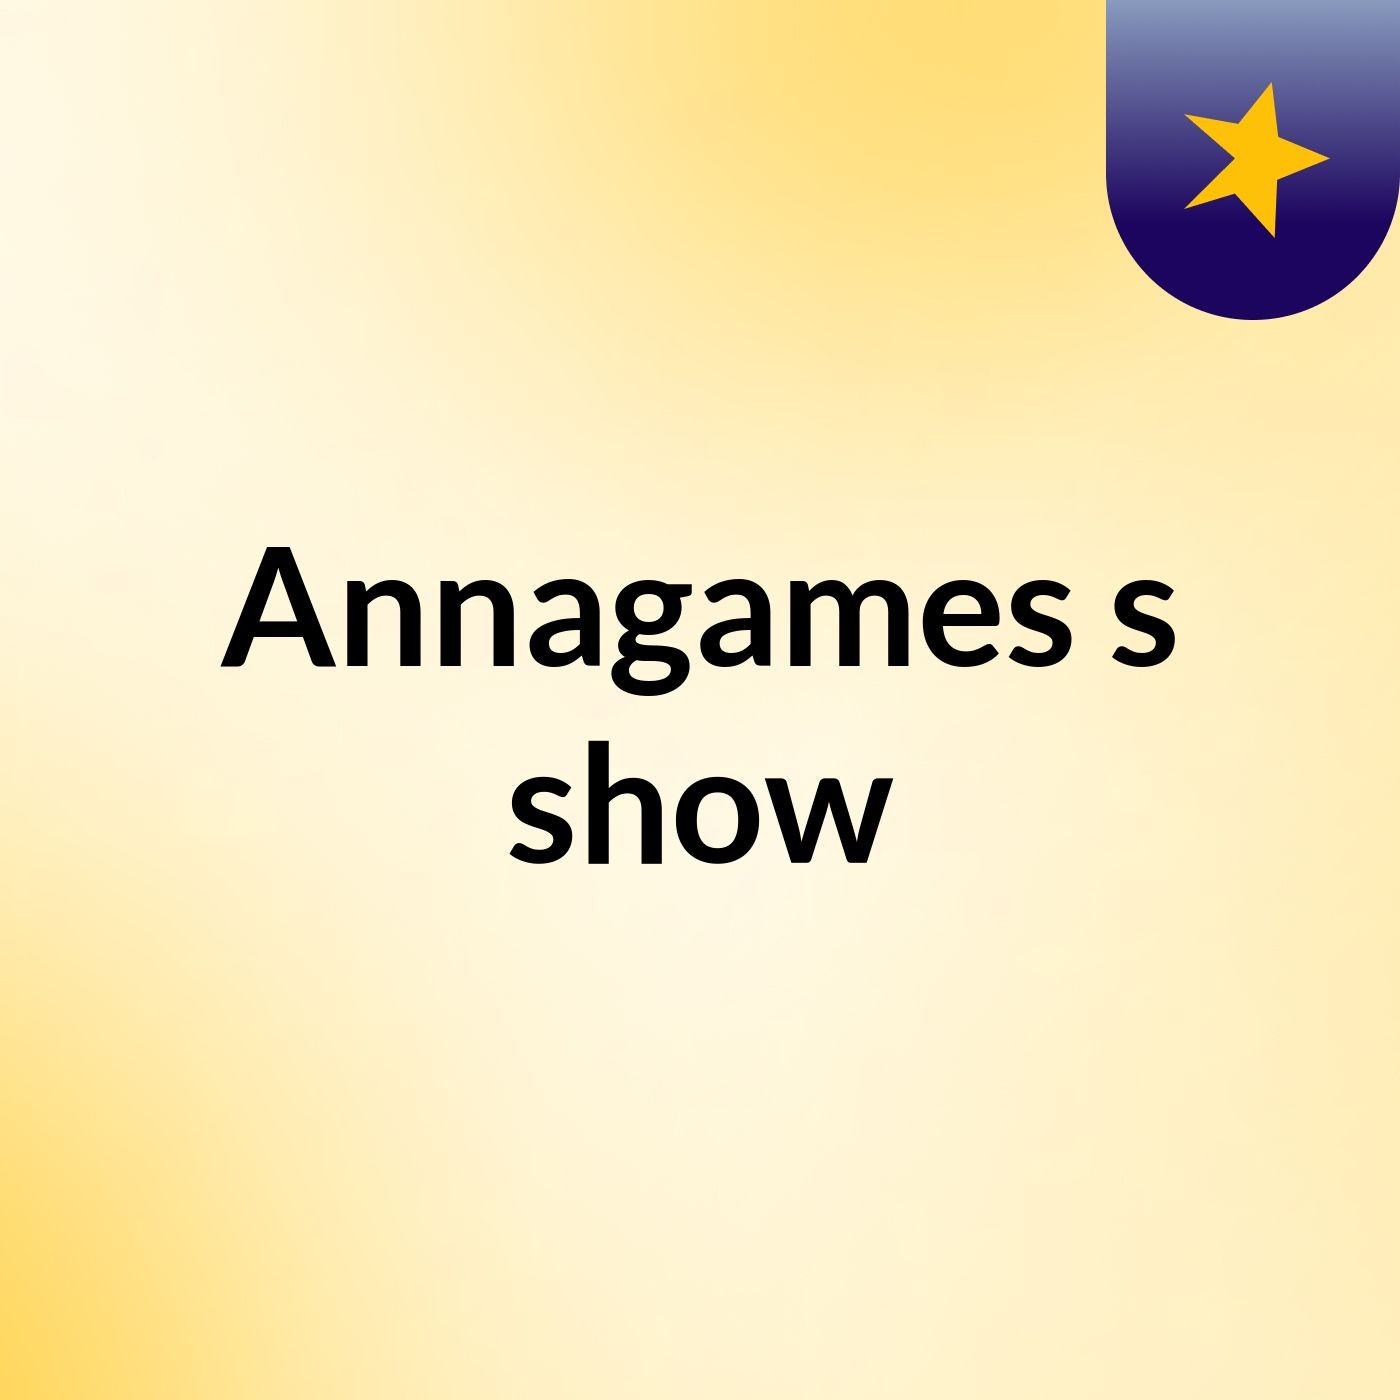 Annagames's show